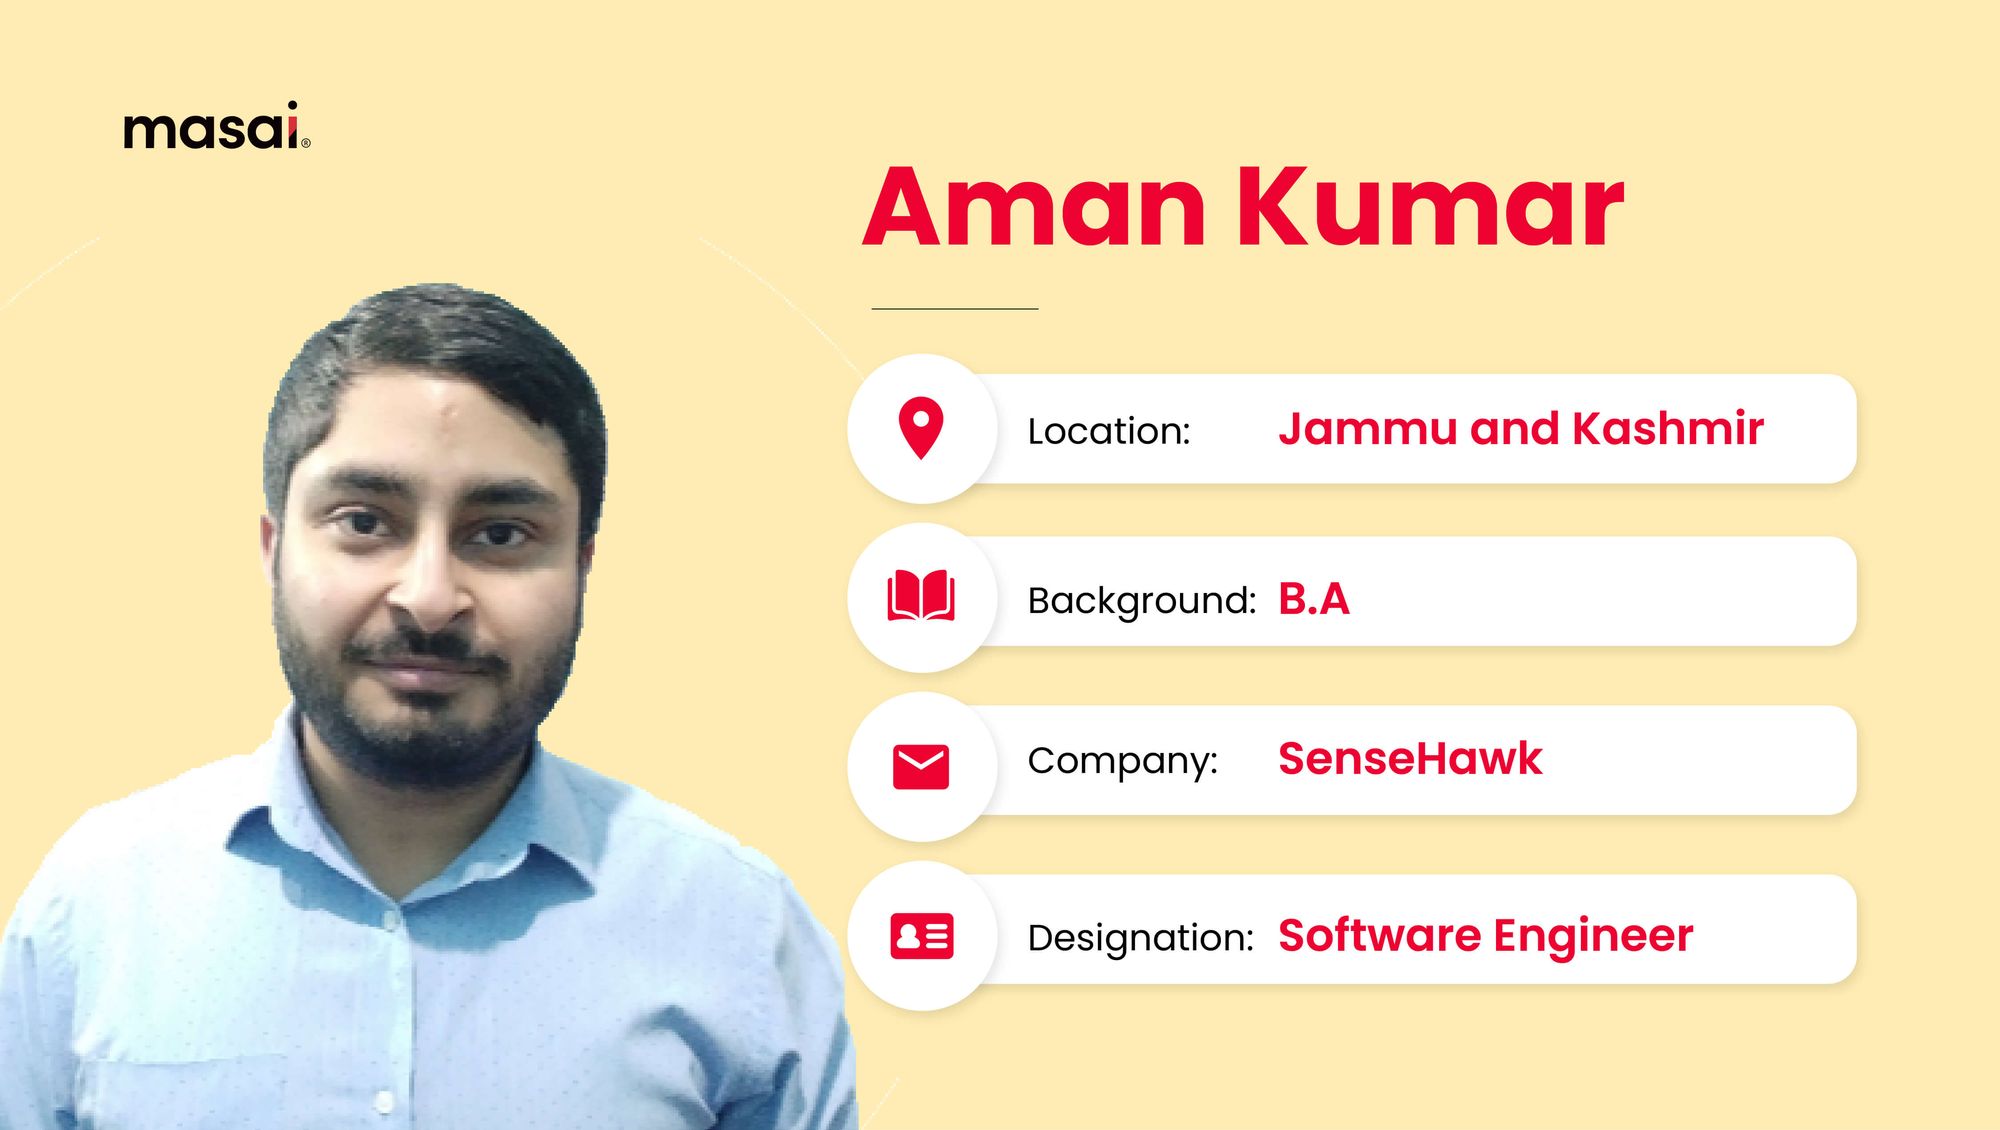 Aman Kumar - A Masai graduate now working as a Software Engineer at SenseHawk